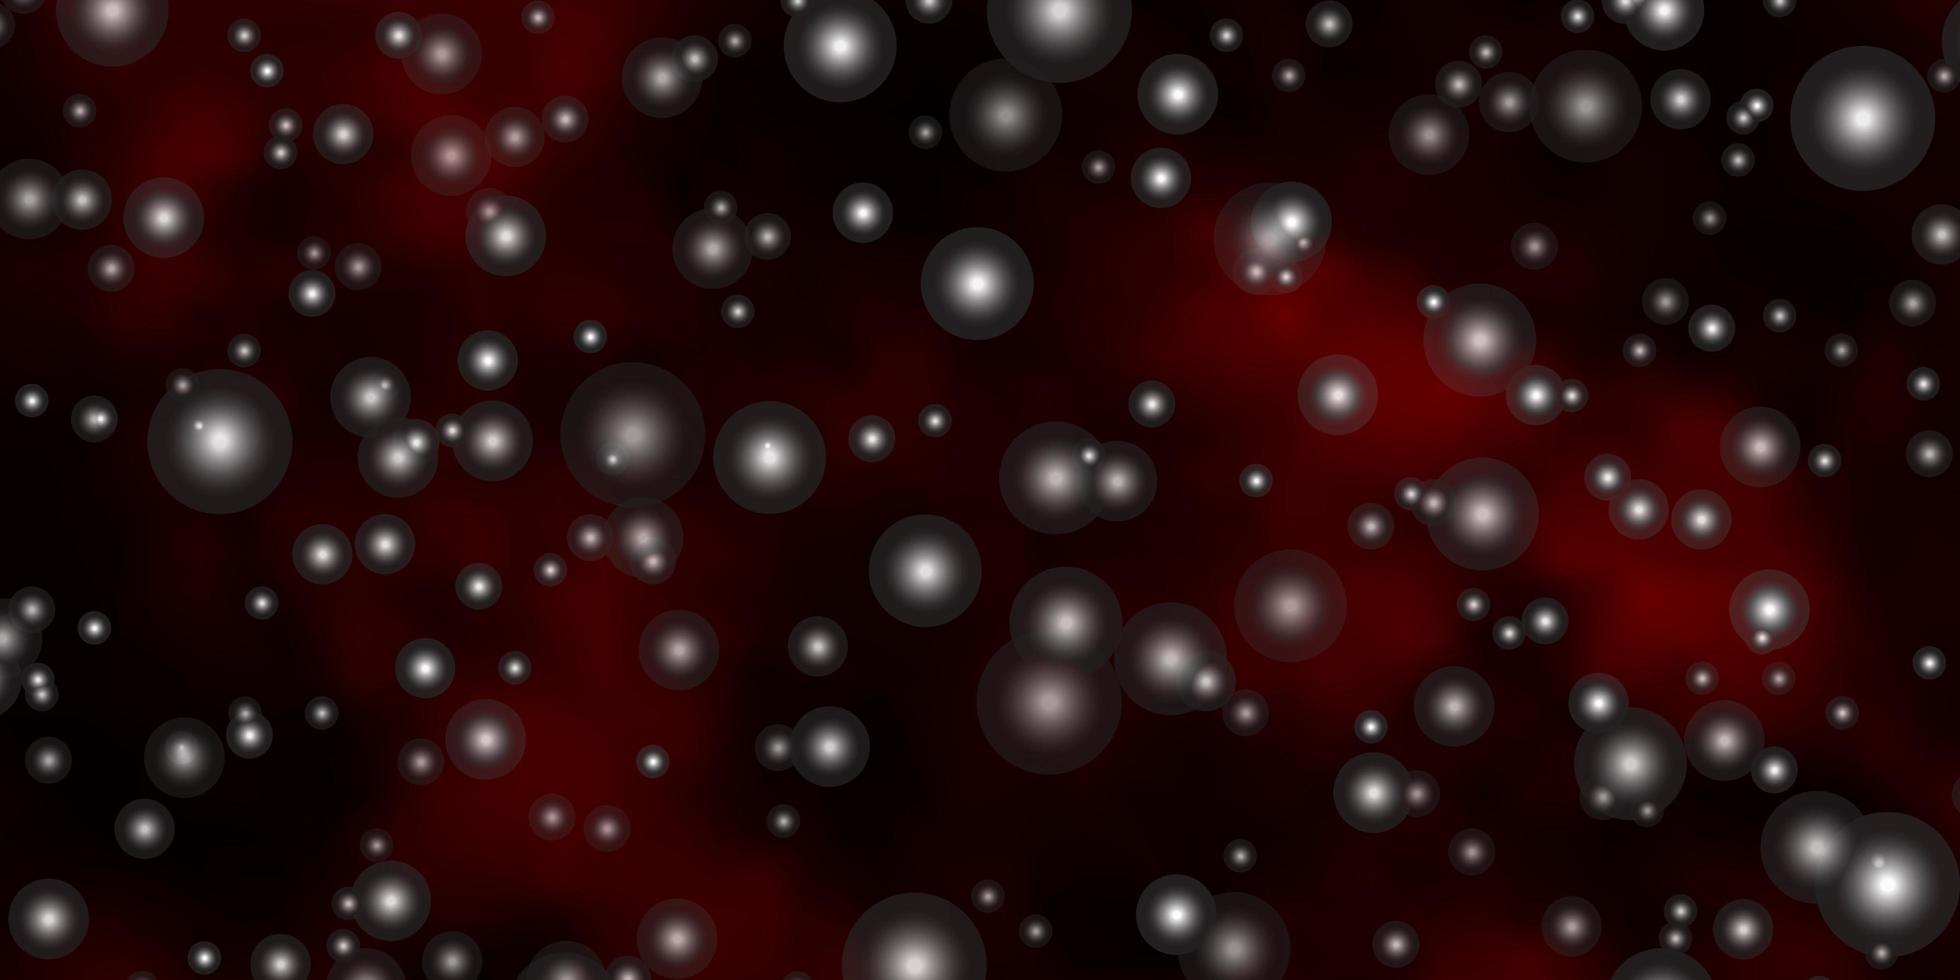 sfondo vettoriale rosso scuro con stelle piccole e grandi